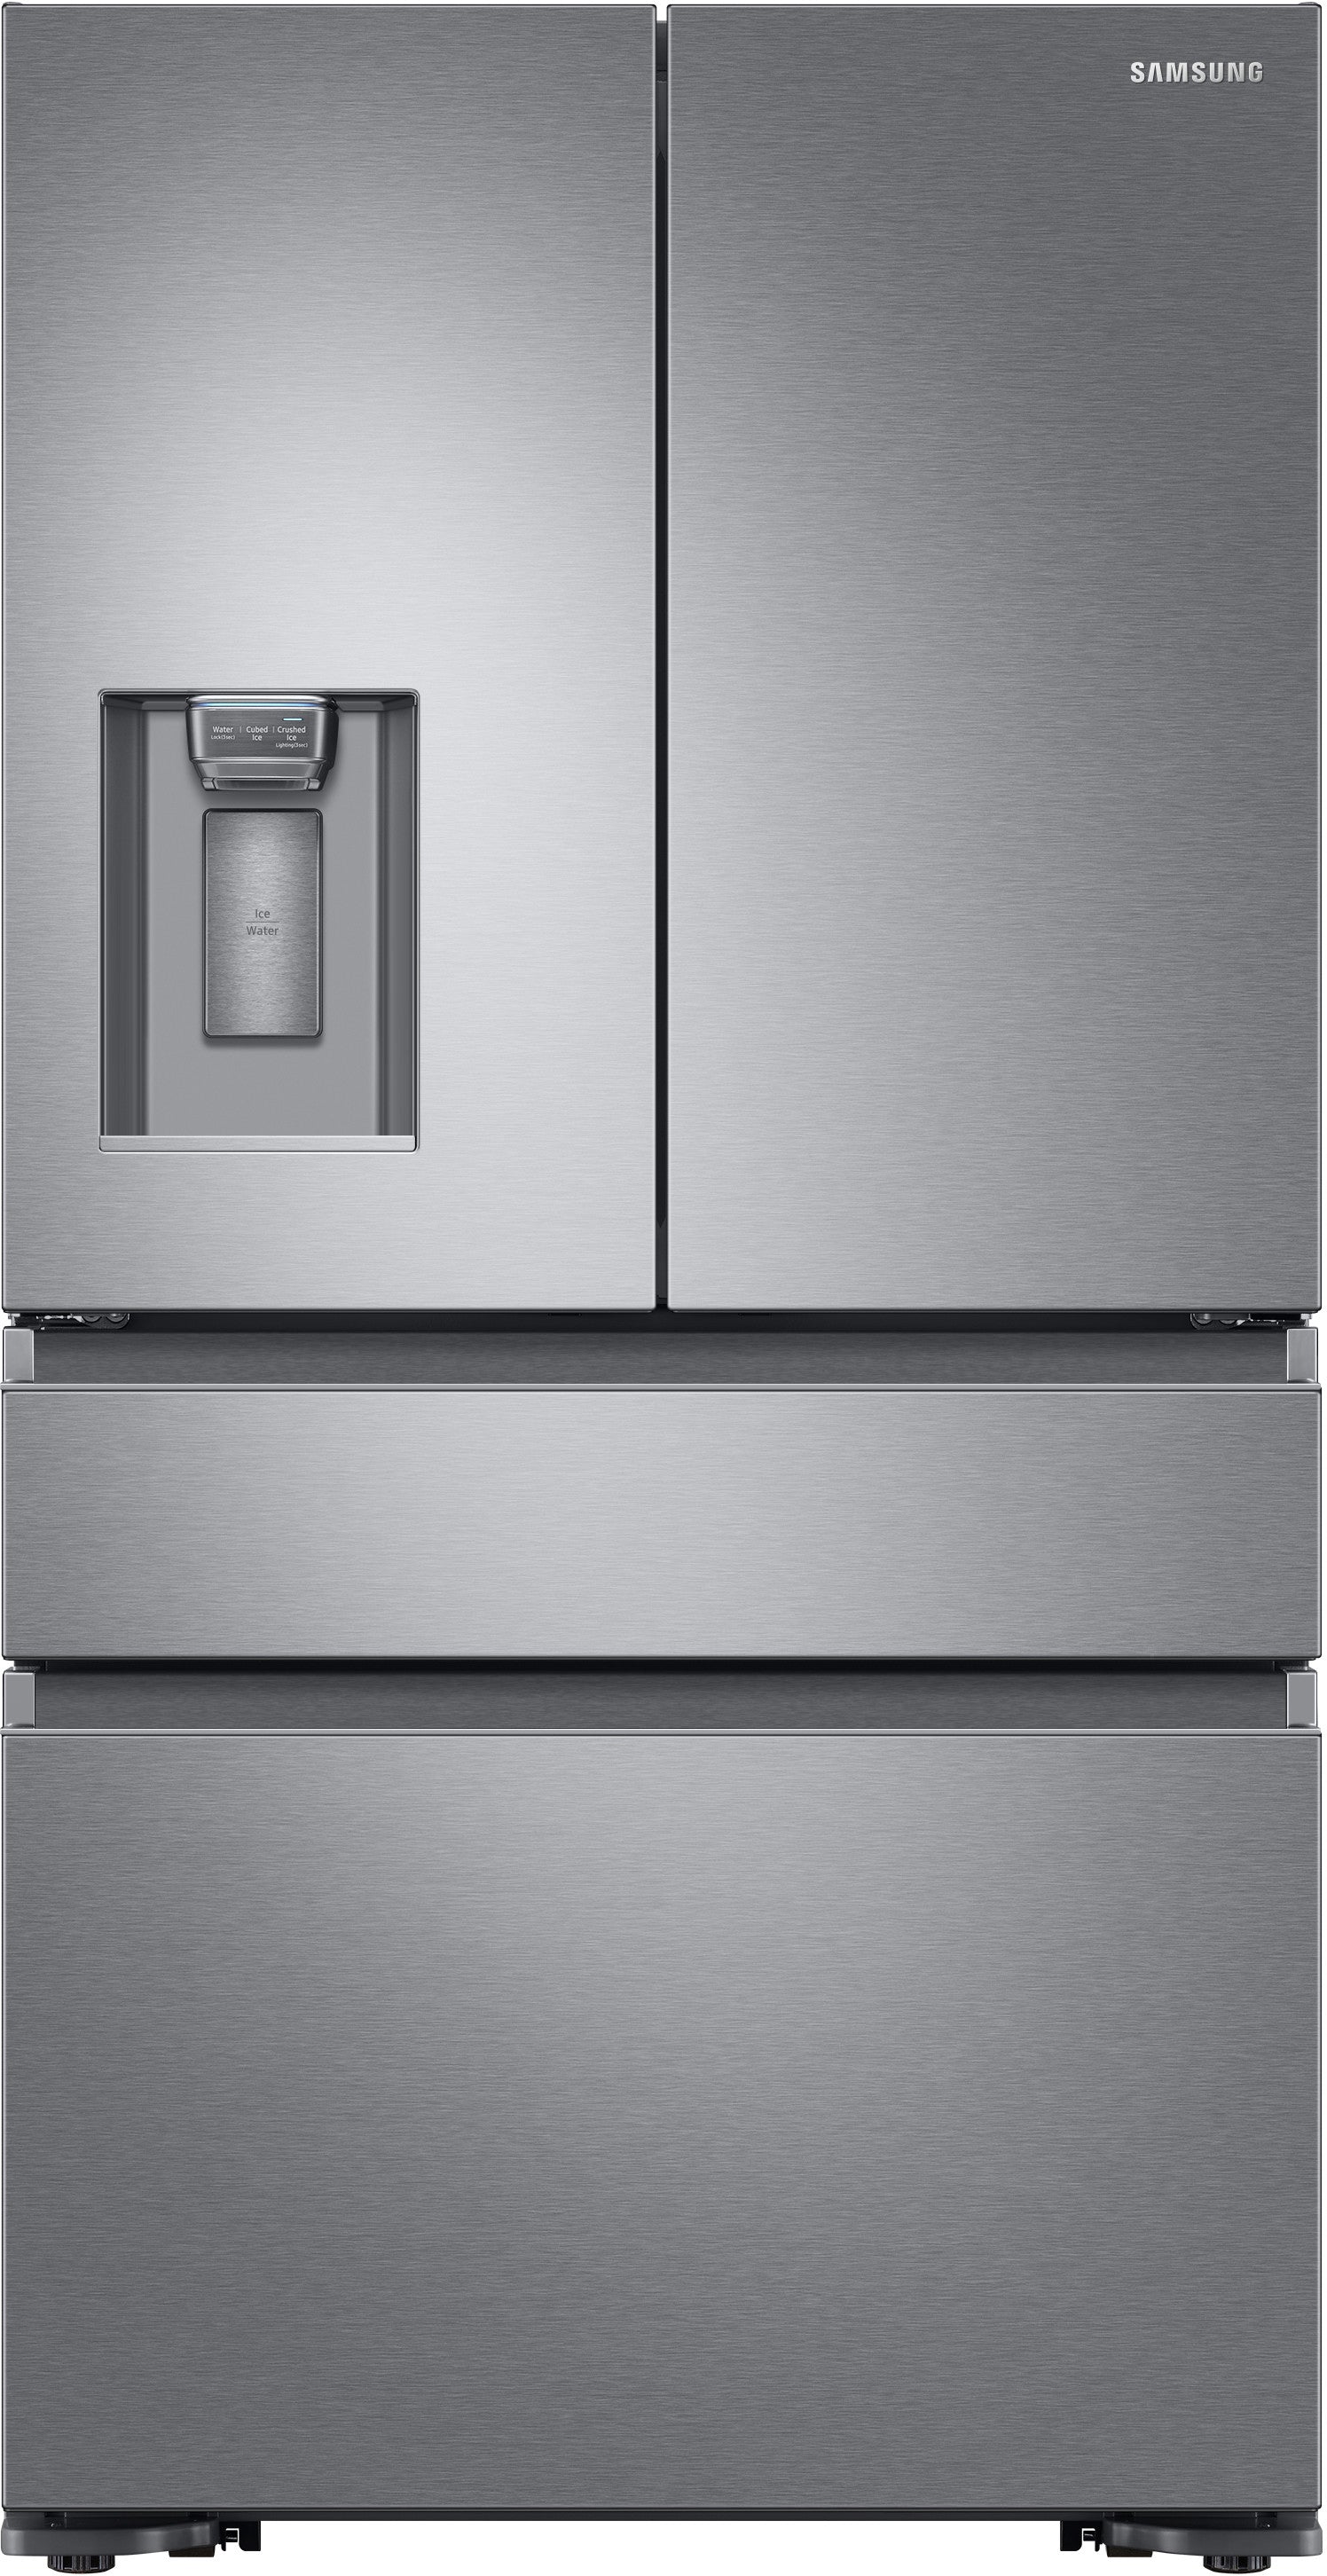 Samsung RF23M8070SR/AA 22.6 Cu. Ft. 4-Door French Door Refrigerator